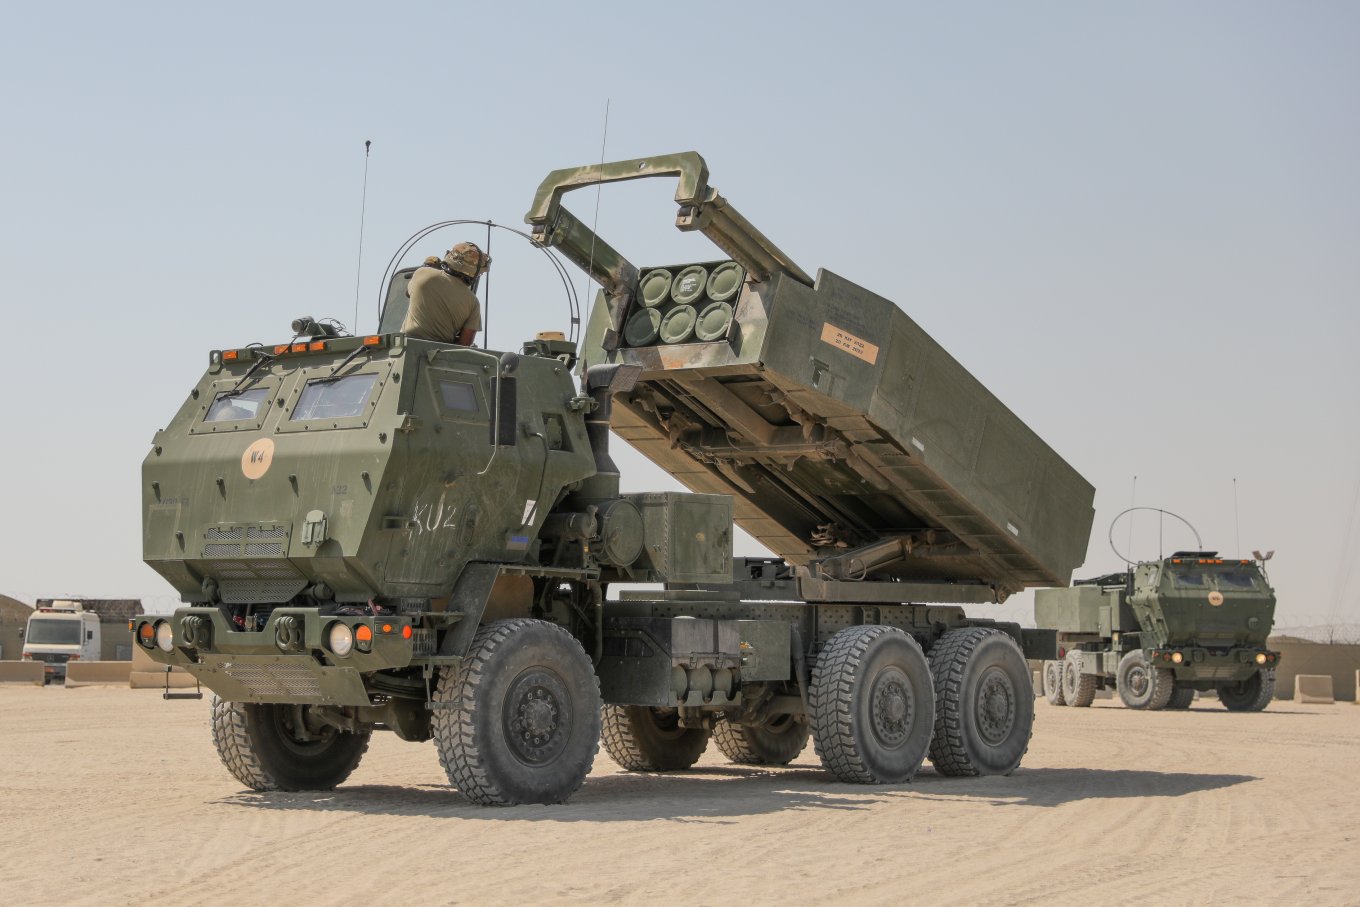 High-Mobility Artillery Rocket System – HIMARS